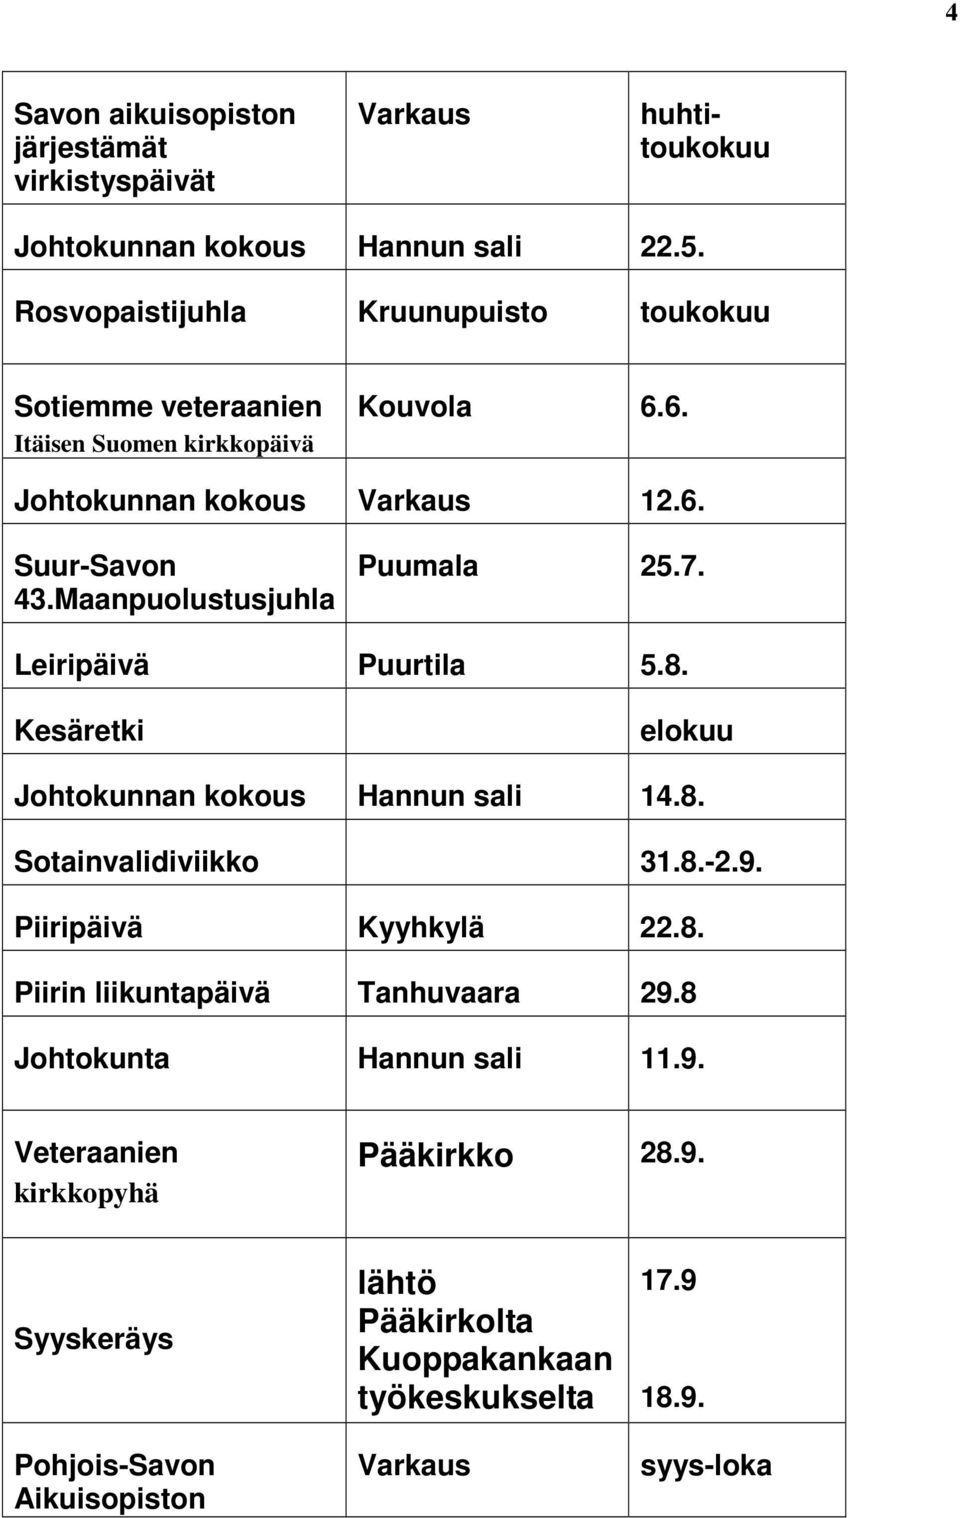 Maanpuolustusjuhla Puumala 25.7. Leiripäivä Puurtila 5.8. Kesäretki elokuu Johtokunnan kokous Hannun sali 14.8. Sotainvalidiviikko 31.8.-2.9.